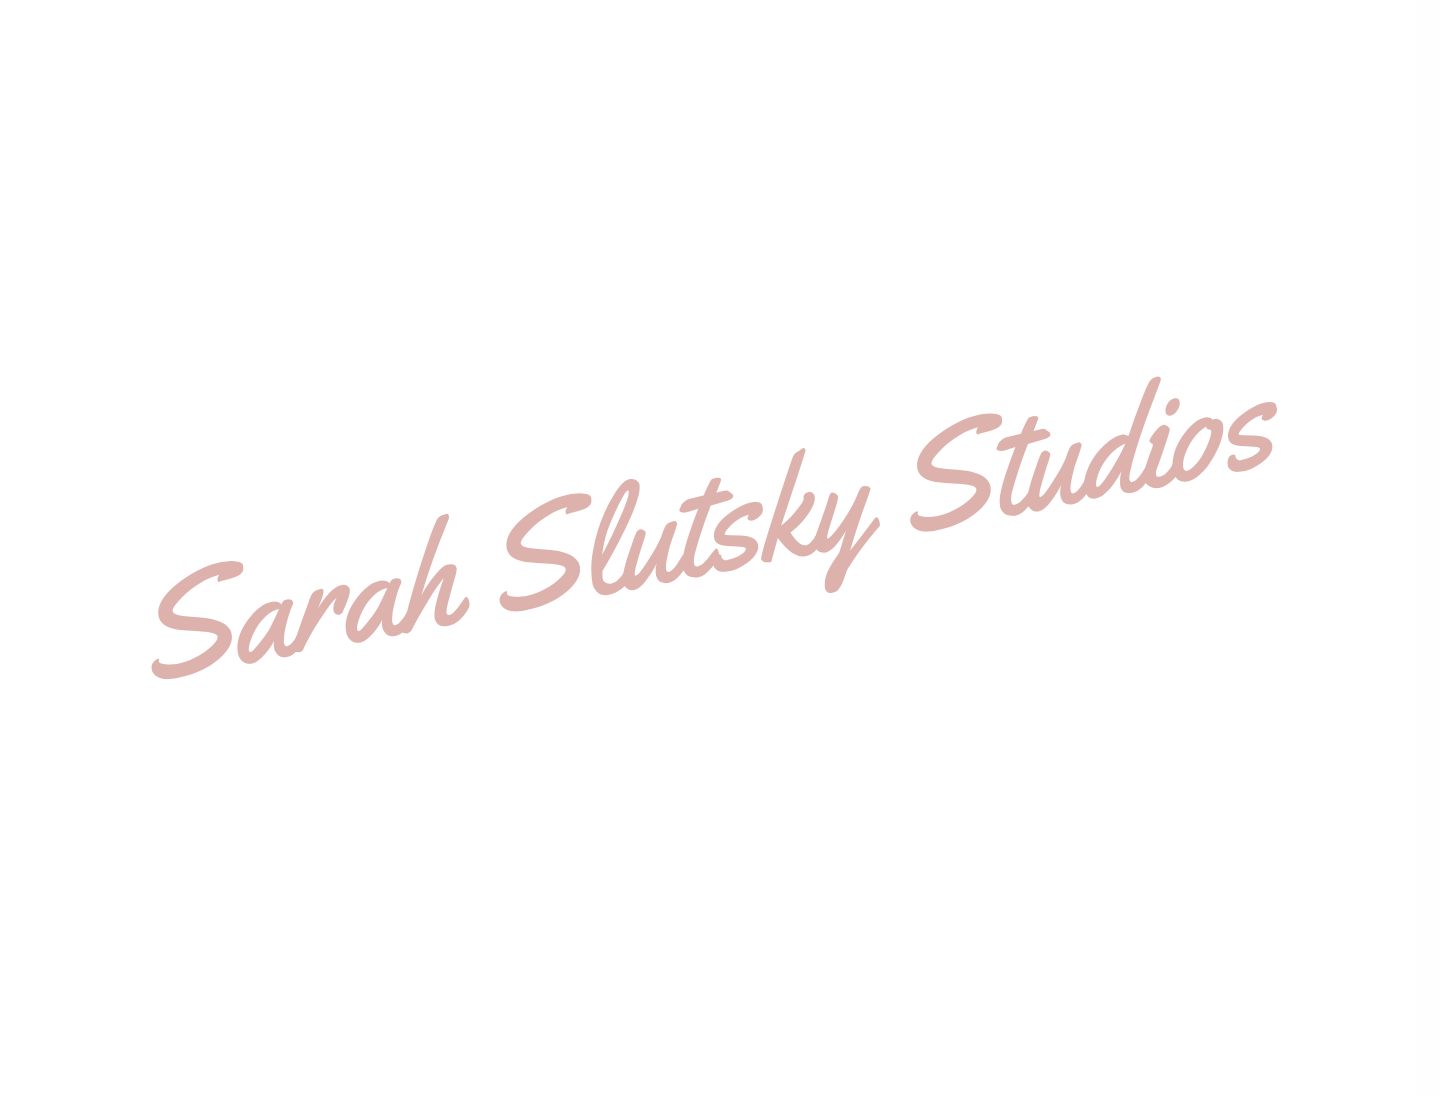 Sarah Slutsky